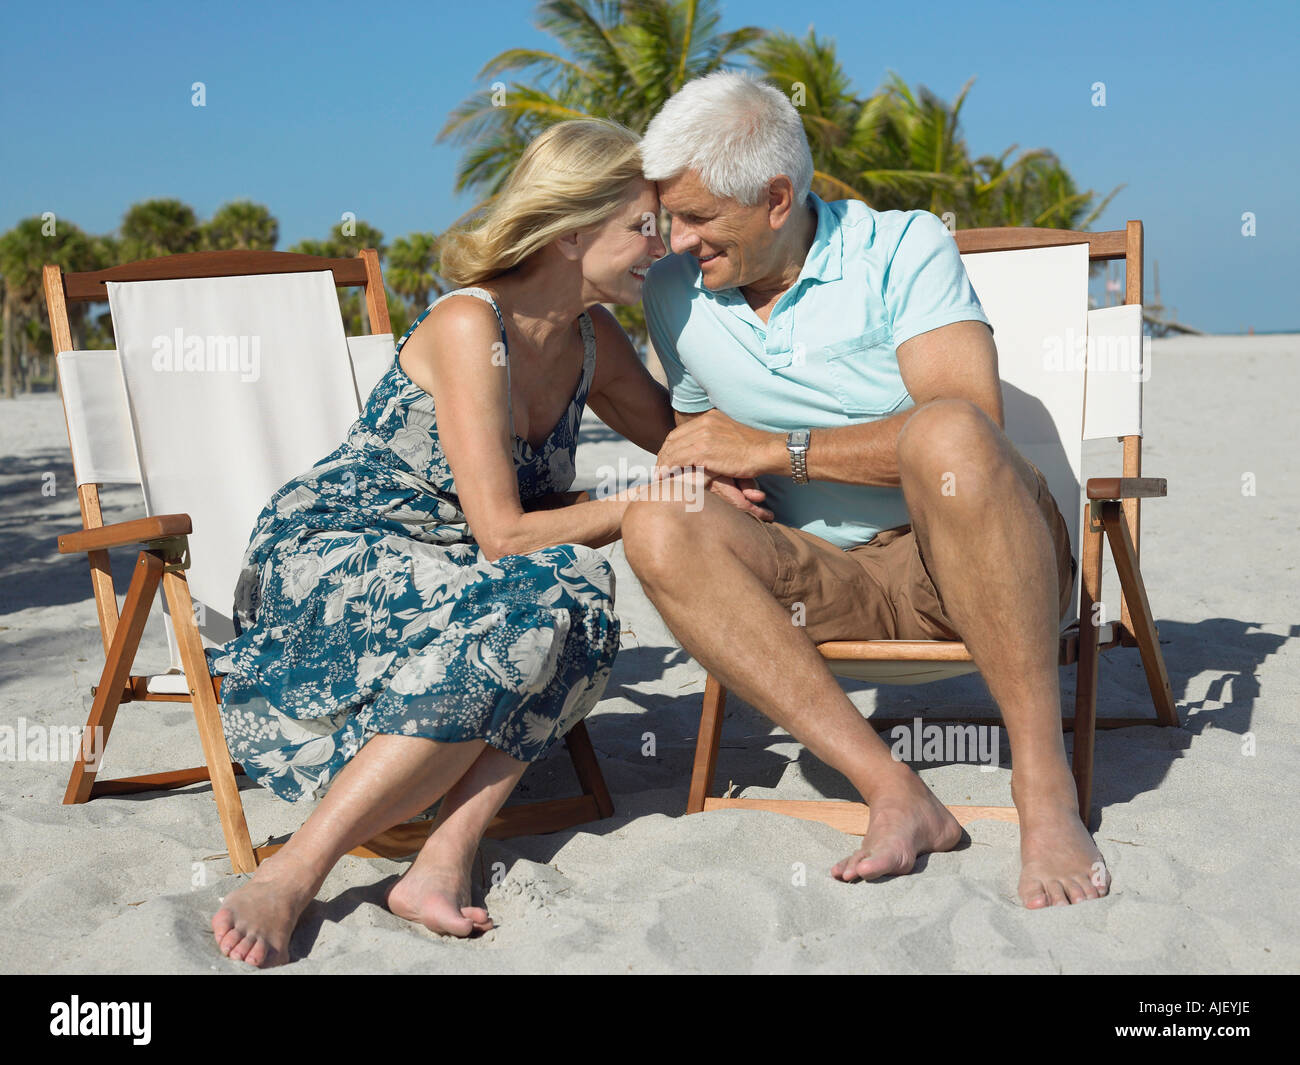 Romantic couple sur les transats sur la plage, main dans la main Banque D'Images